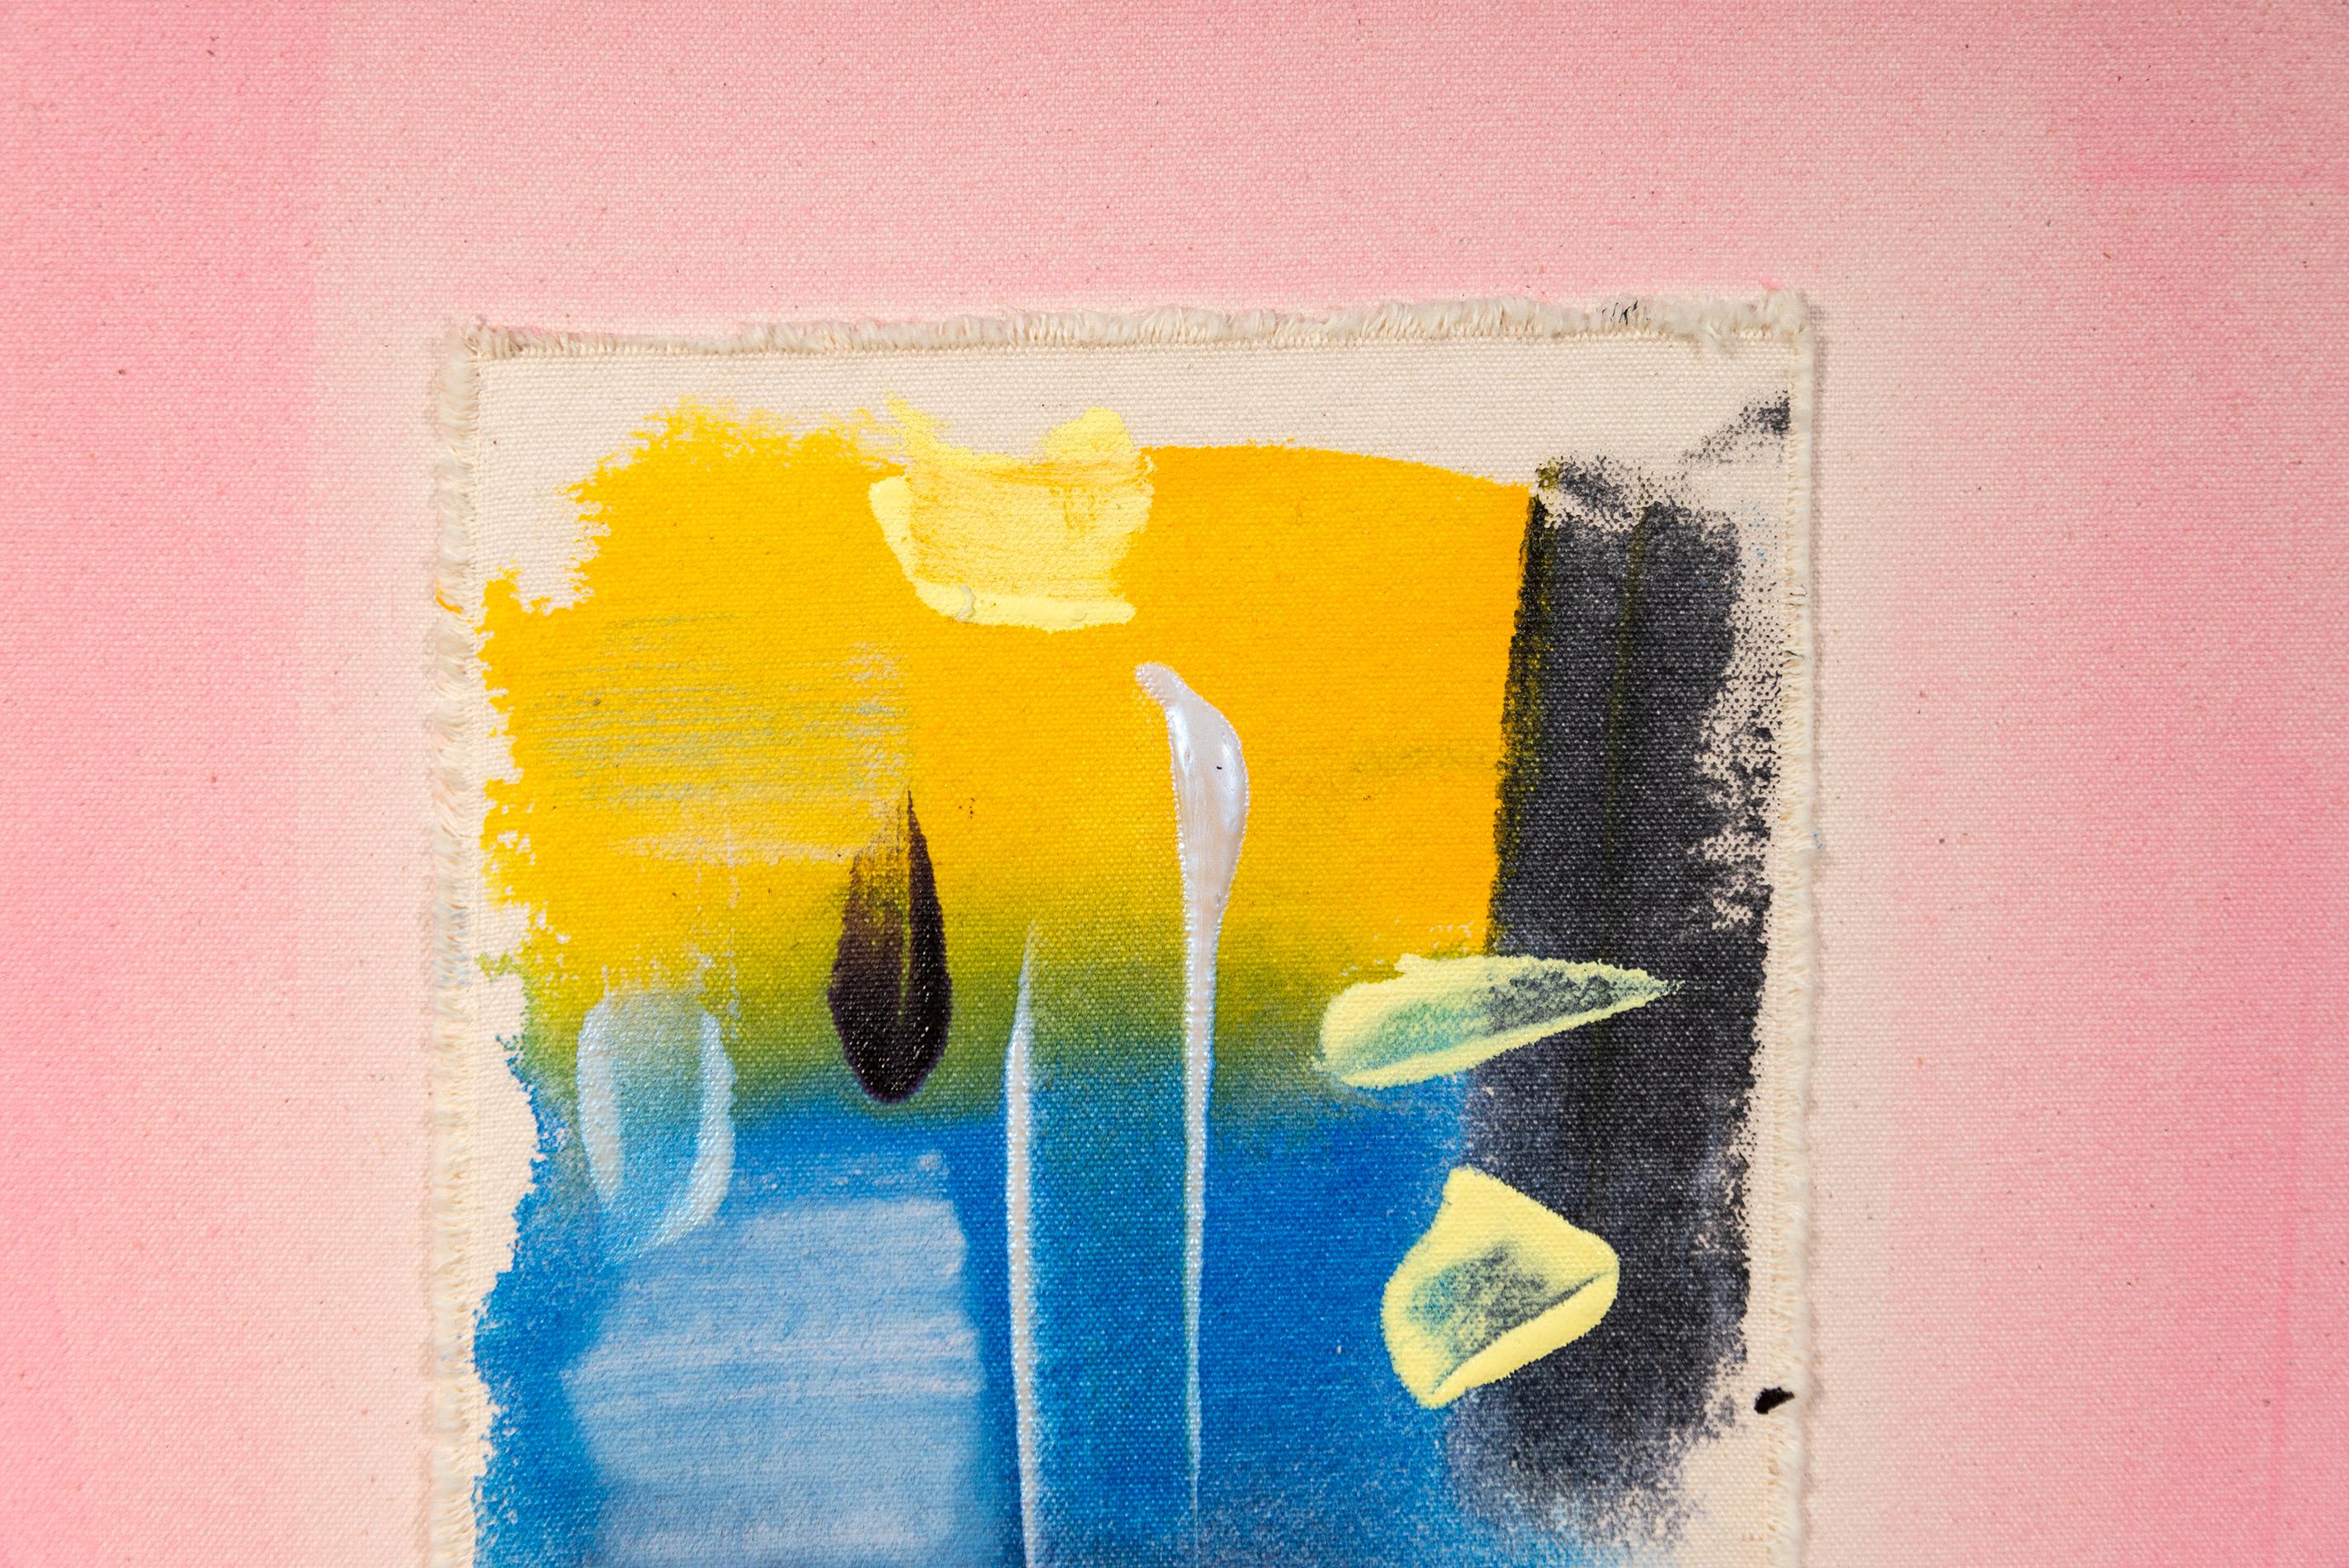 L'artiste canadienne Milly Ristvedt explore le pouvoir de la couleur et de la forme depuis plus de quatre décennies. Elle est considérée comme un maître coloriste. Le critique d'art Barry Lord (Art in America) a déclaré que les peintures de Ristvedt